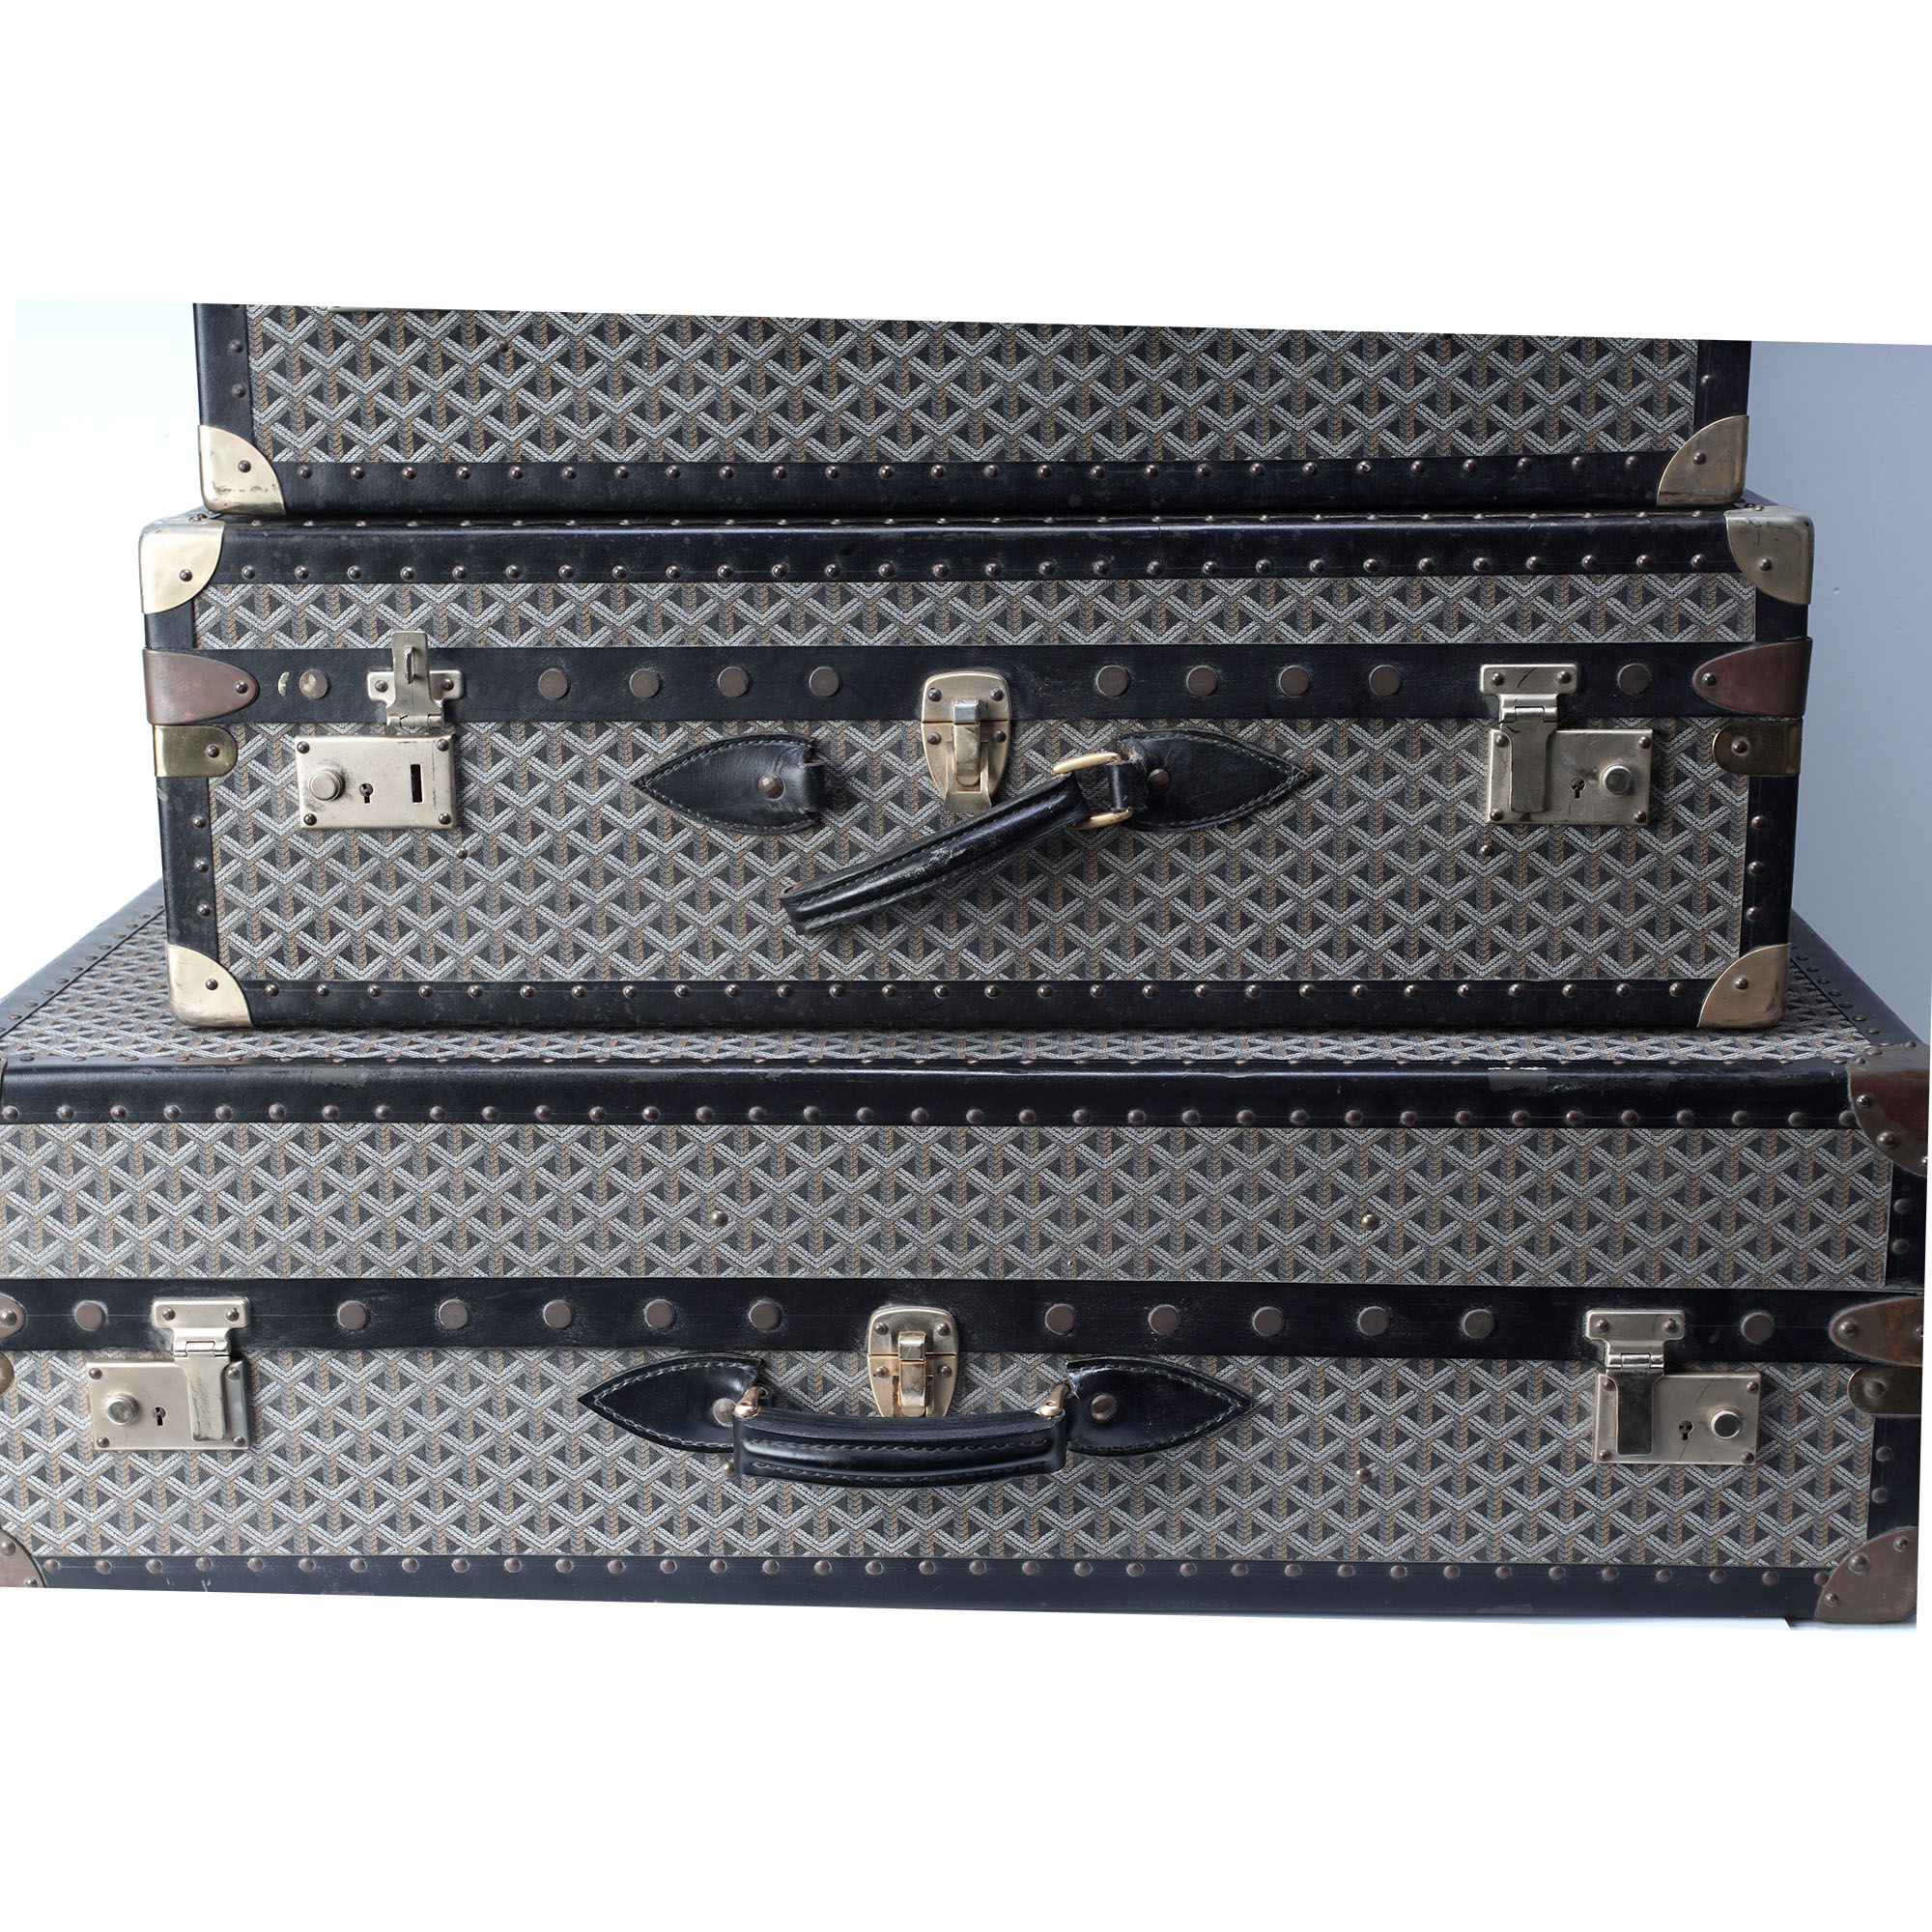 first copy☑ luggage Goya goyard color suitcase